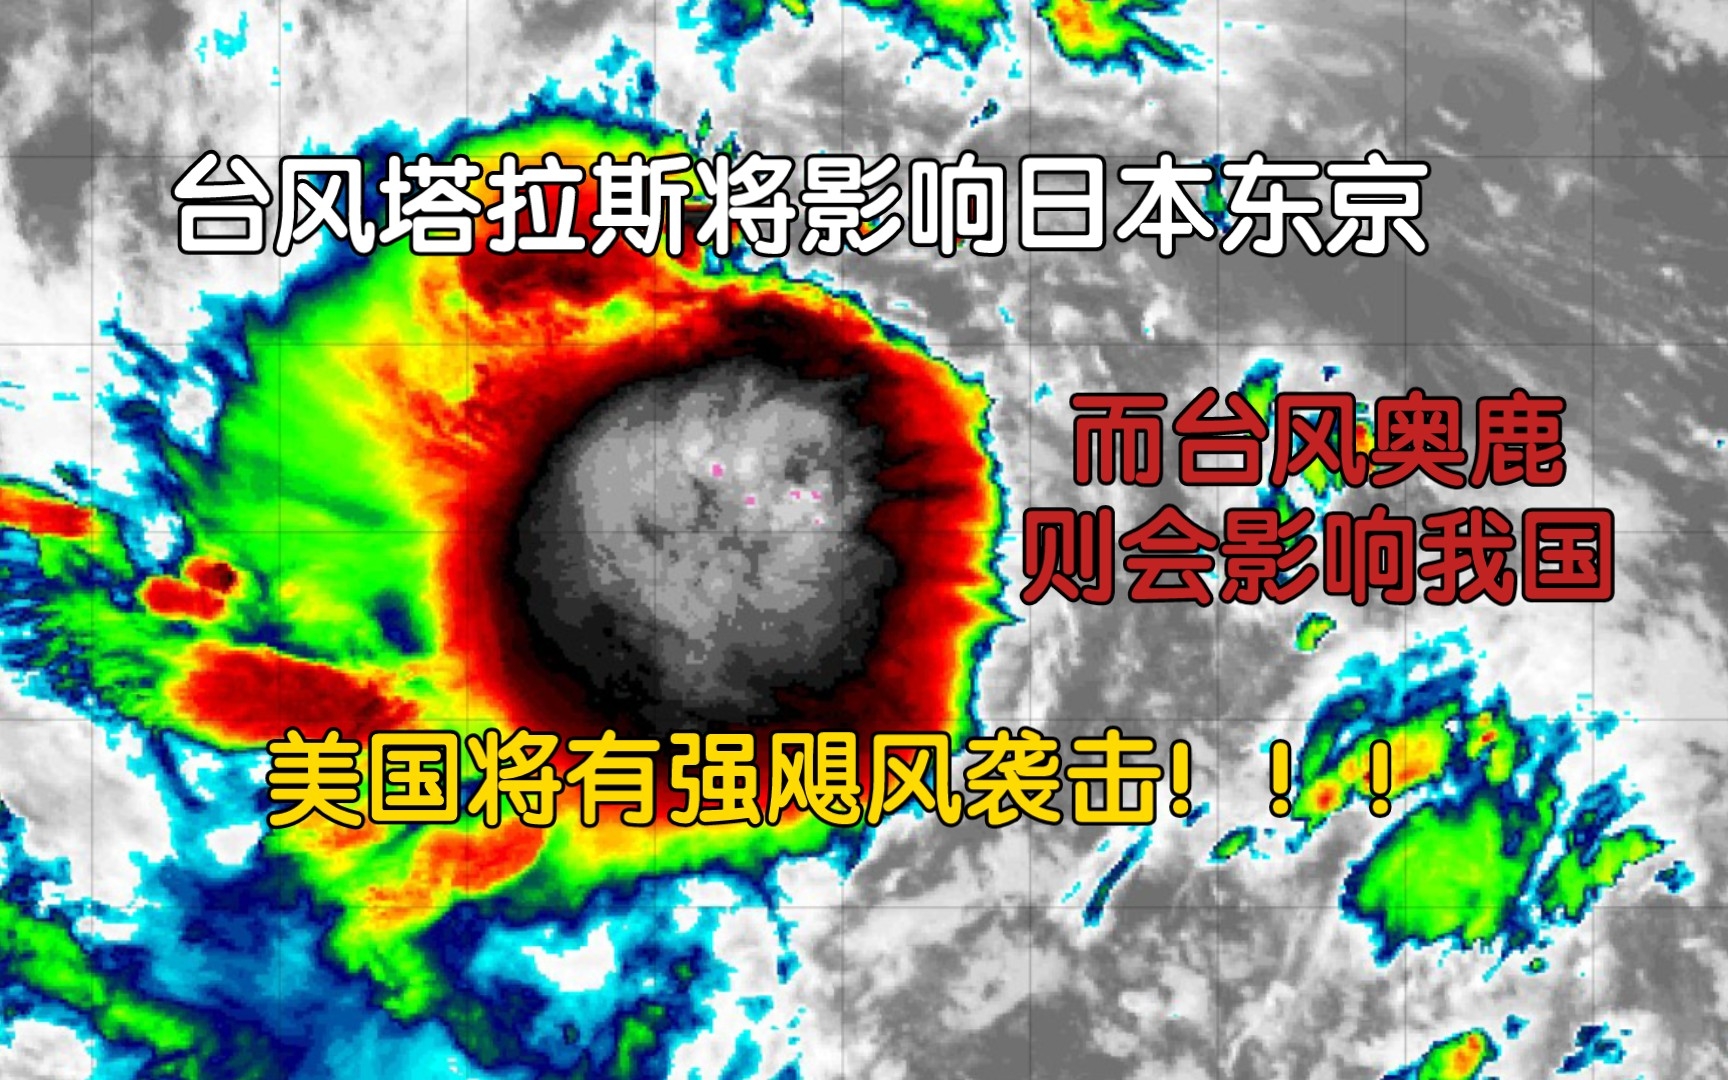 台风塔拉斯和台风奥鹿分别影响不同地区,而美国将会有强飓风袭击